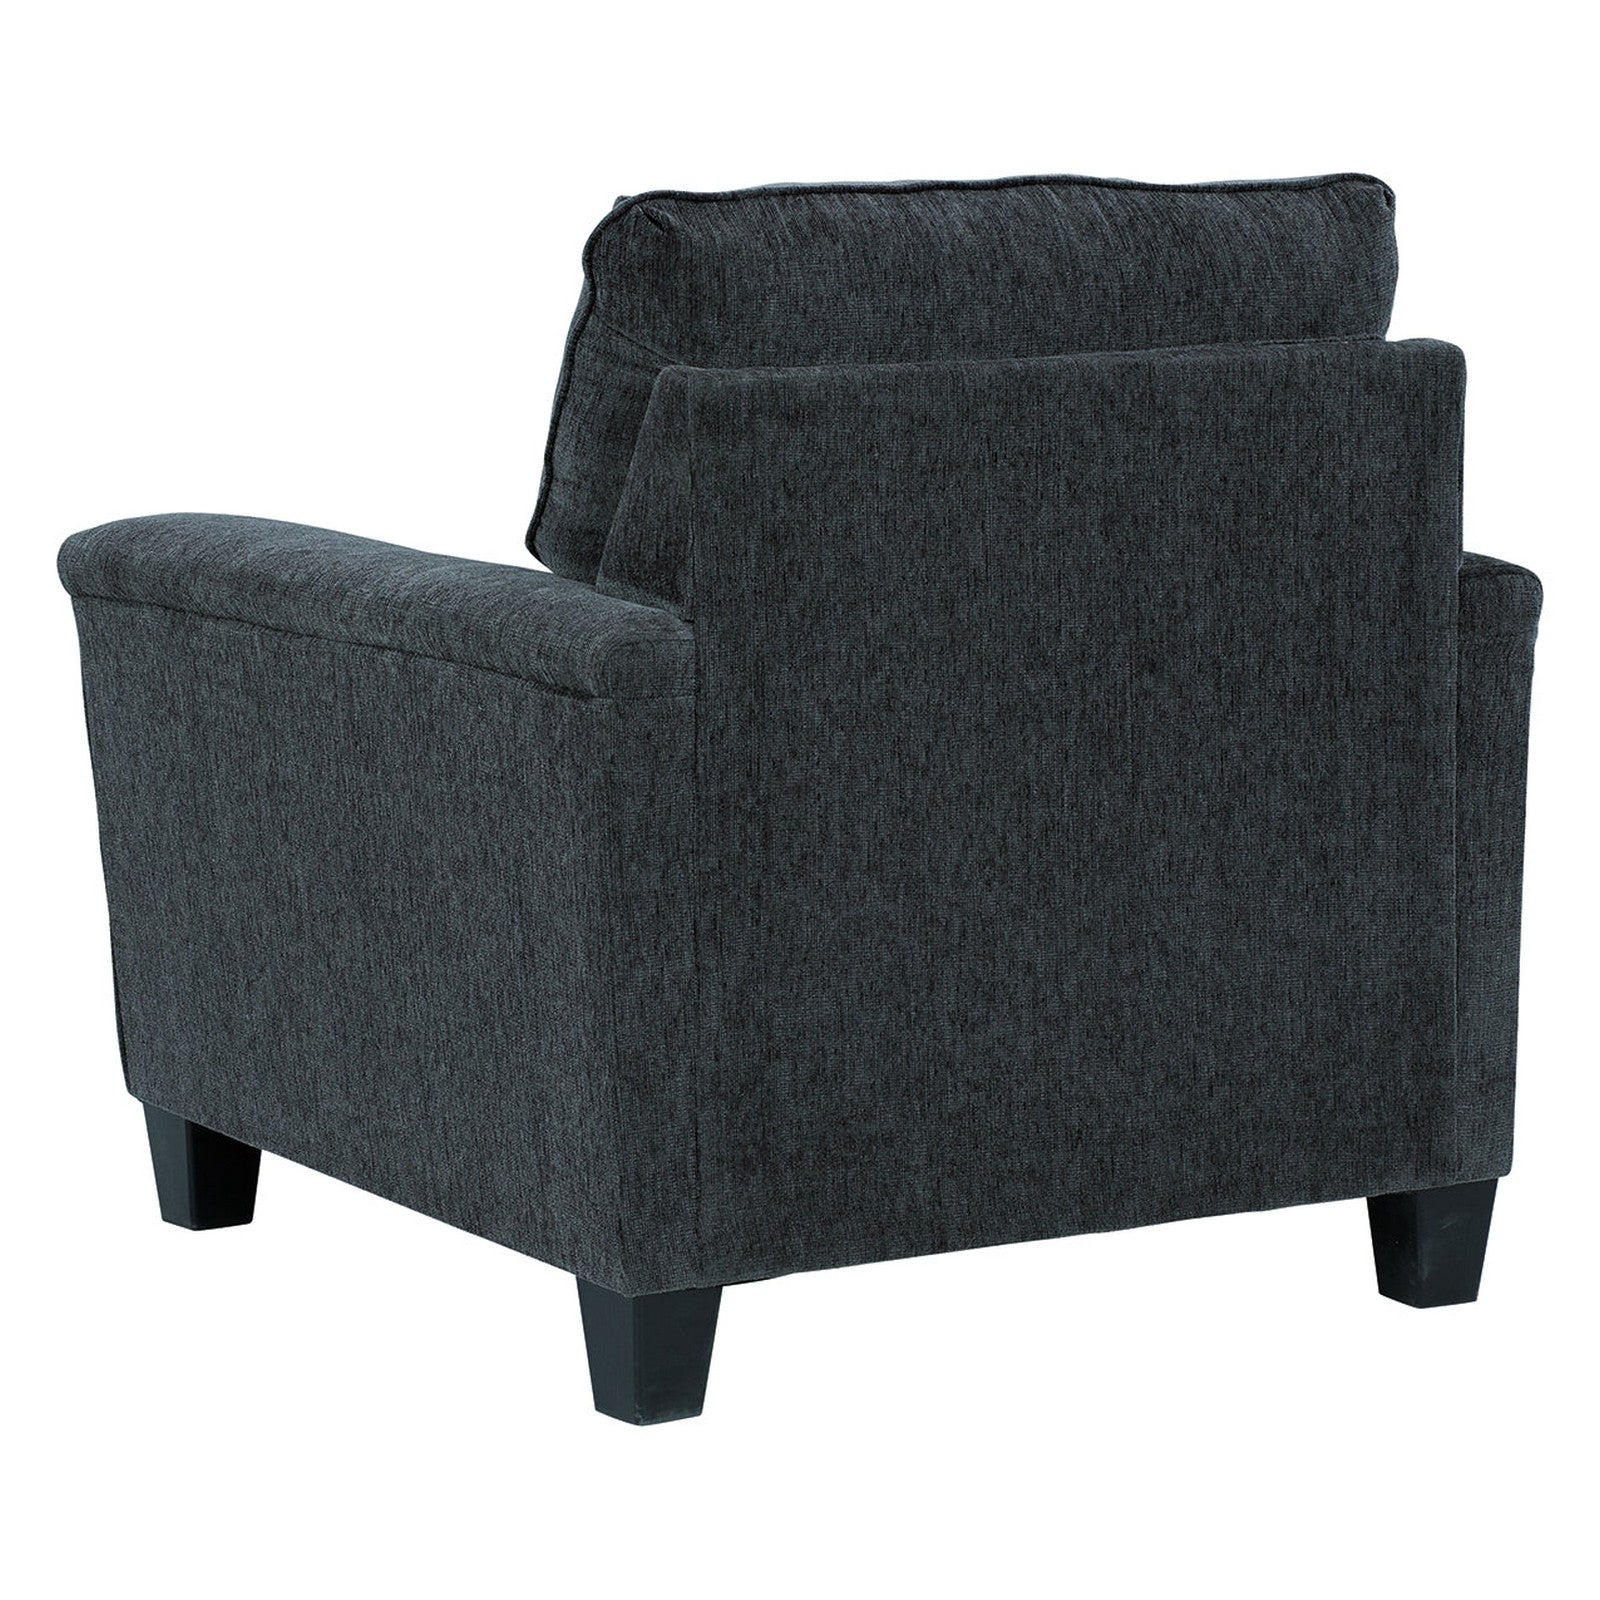 Abinger Chair - Ash-8390520 - Underkut